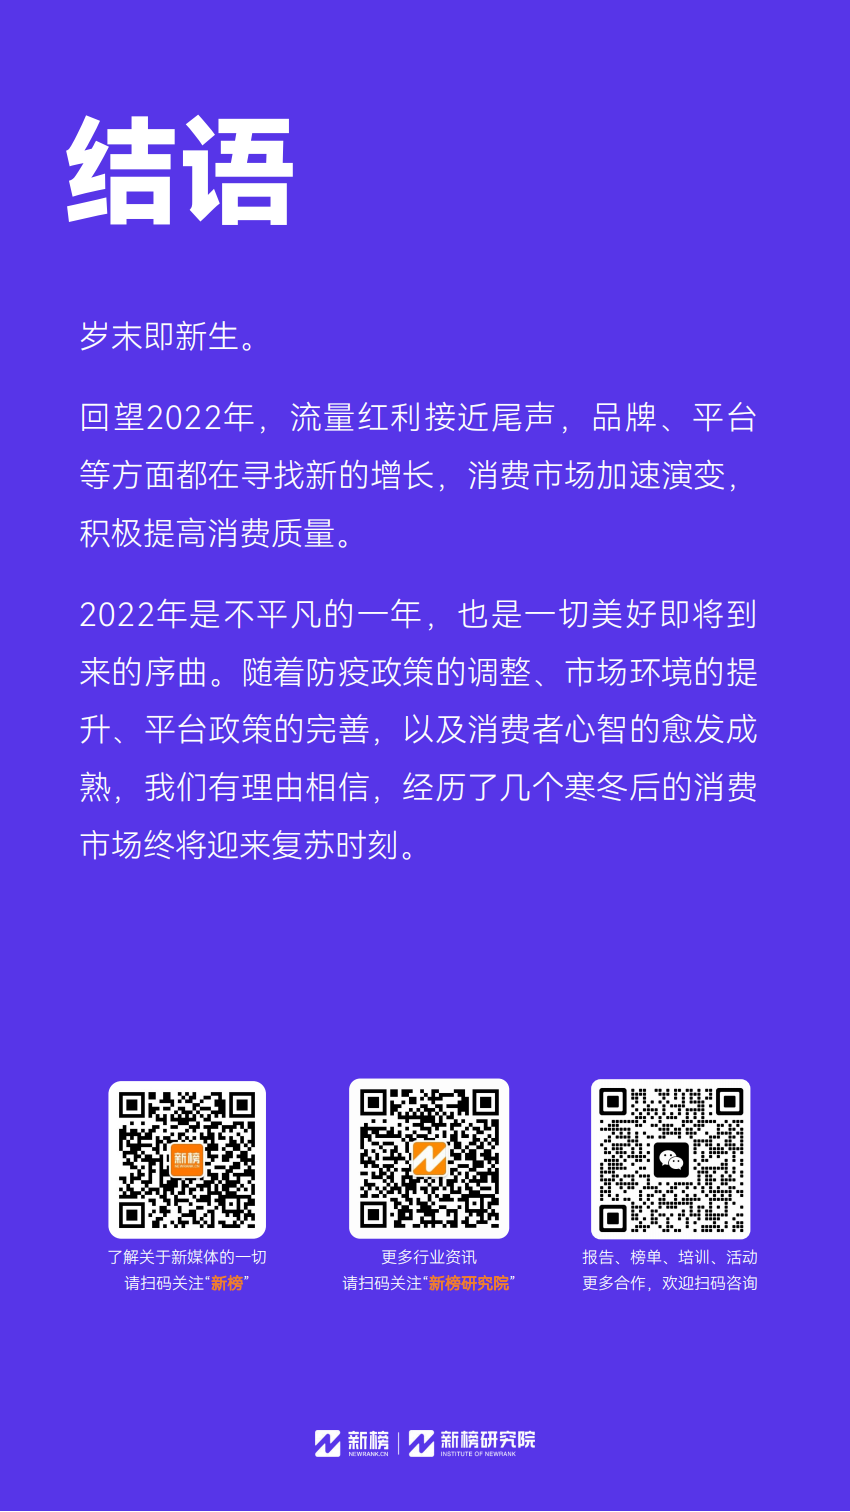 【新榜研究院】2023消费趋势报告 (1) (1) (1)_28.png